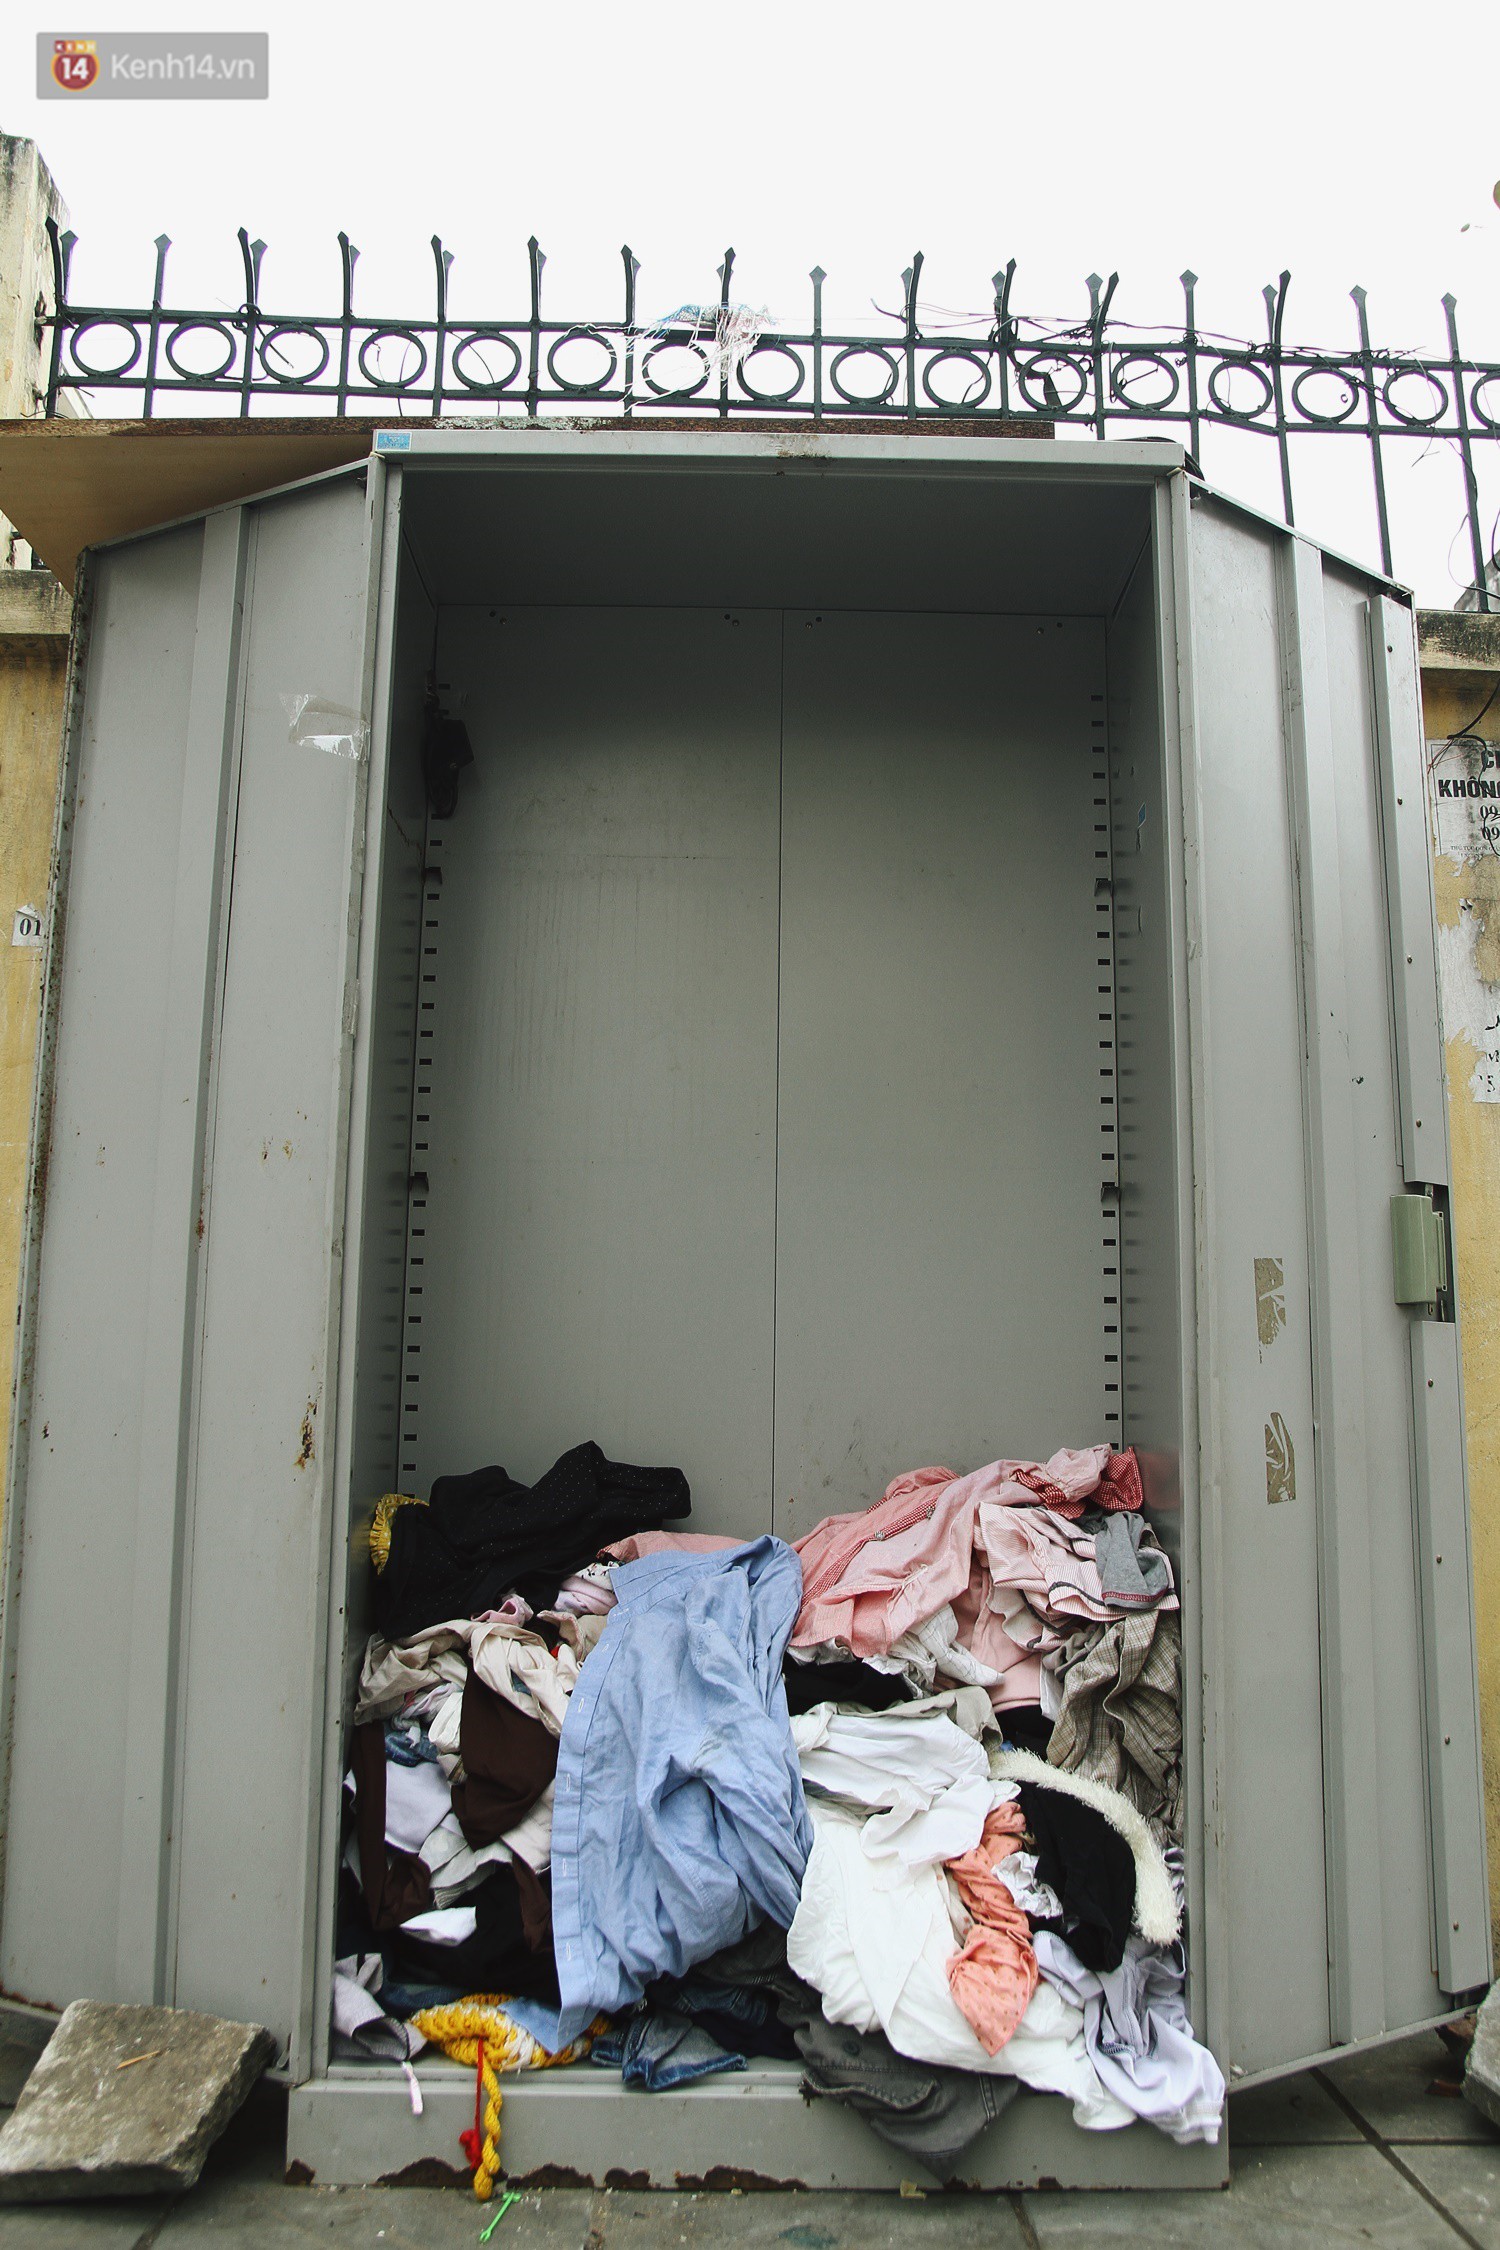 Cái kết buồn của tủ quần áo ai thừa ủng hộ, ai thiếu đến lấy ở Hà Nội: Người gom đồ từ thiện đi bán, người tặng cả áo rách, quần lót cũ - Ảnh 11.